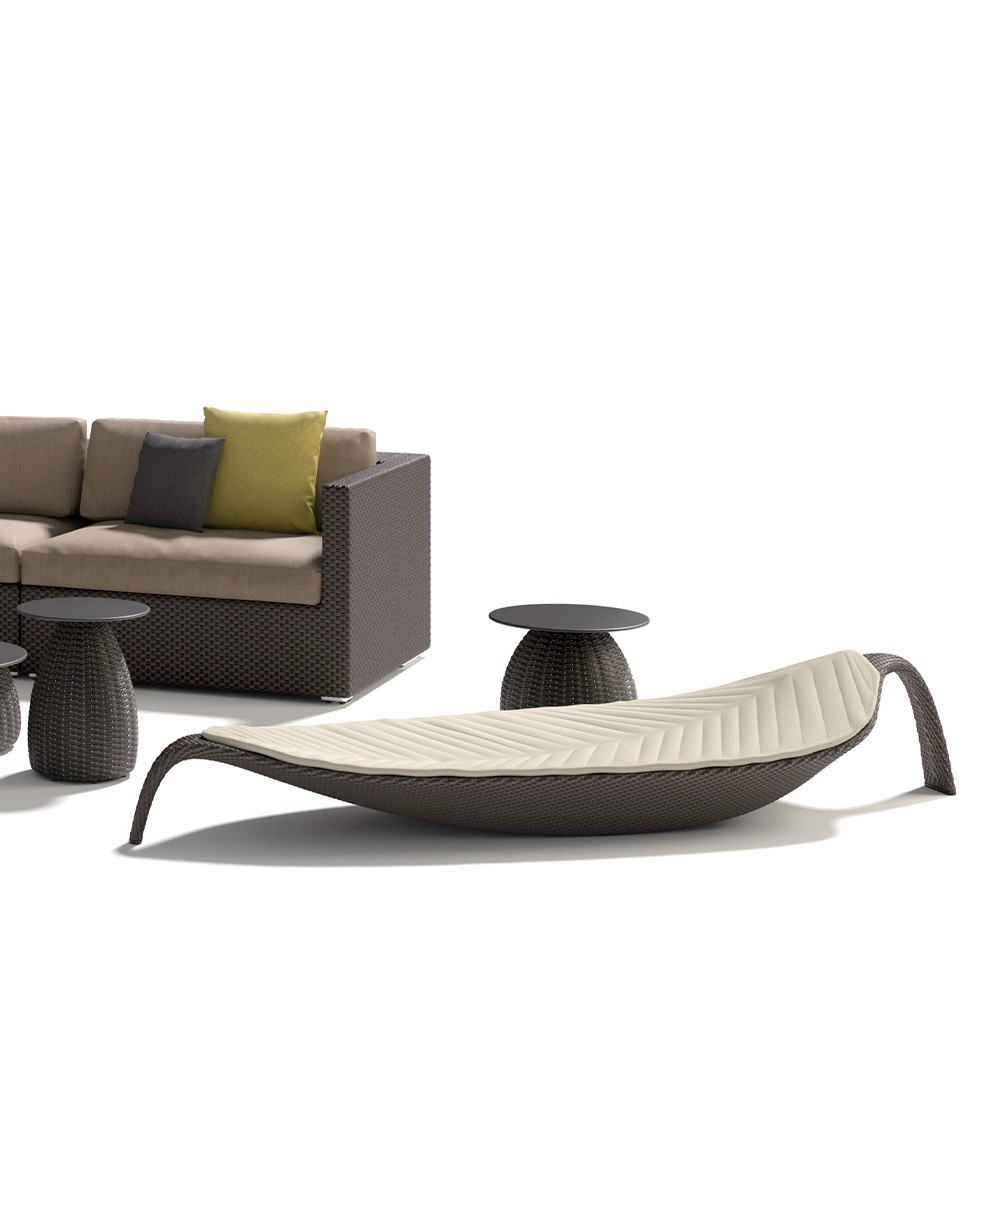 Die Sonnenliege LEAF mit weiteren Outdoor Möbeln von Dedon im RAUM concept store 